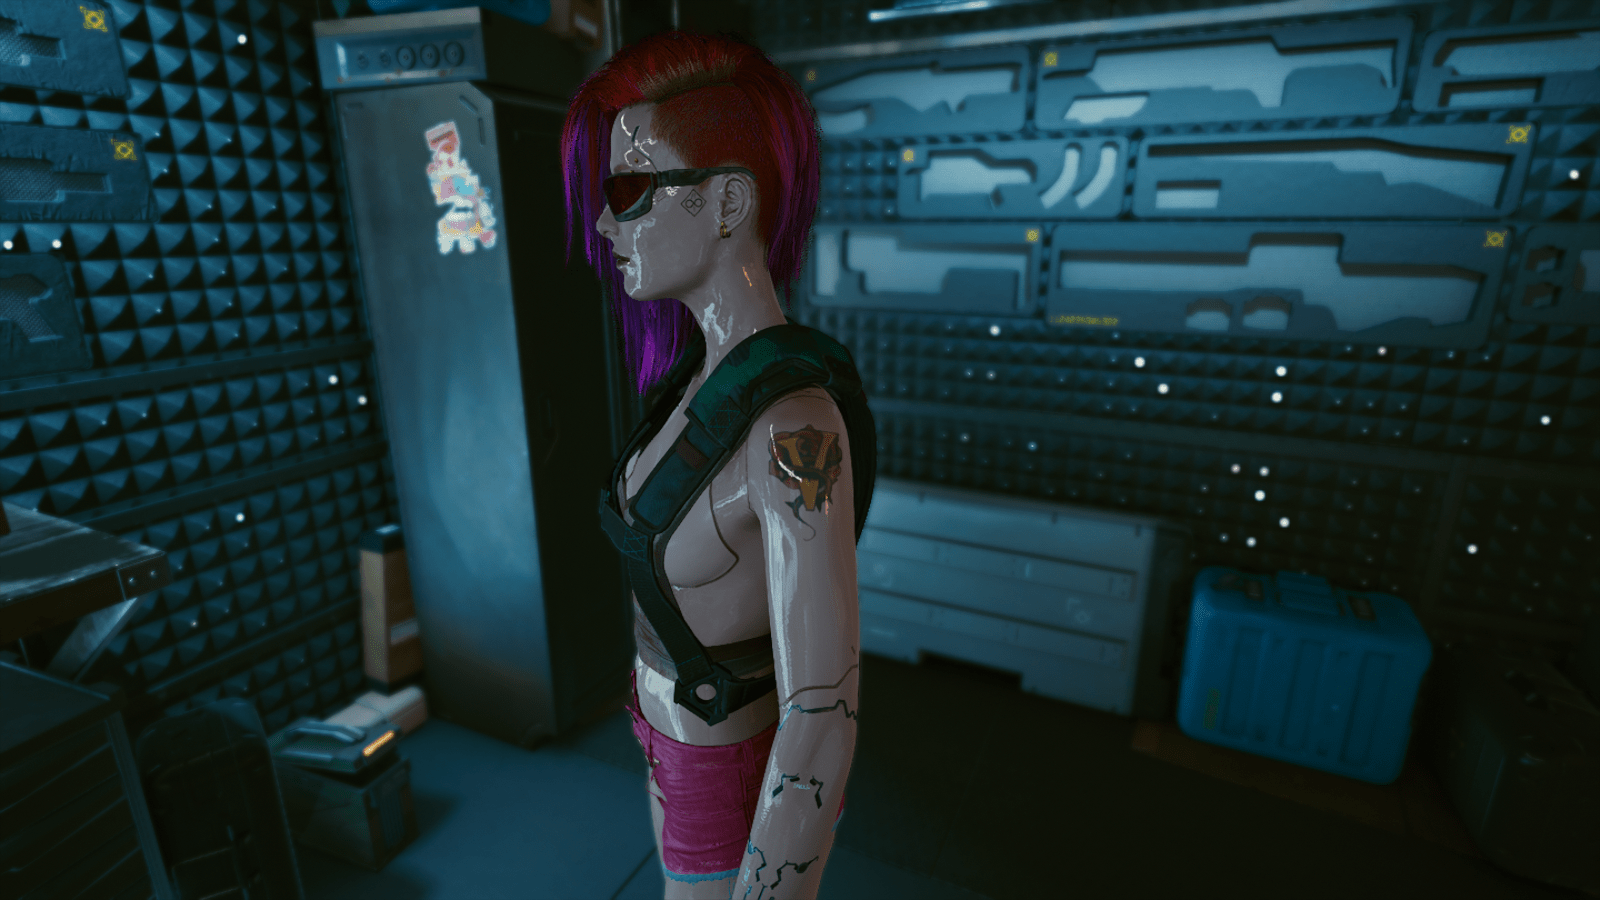 3D tattoos ie cyberpunk 2077 irl  rDamnthatsinteresting